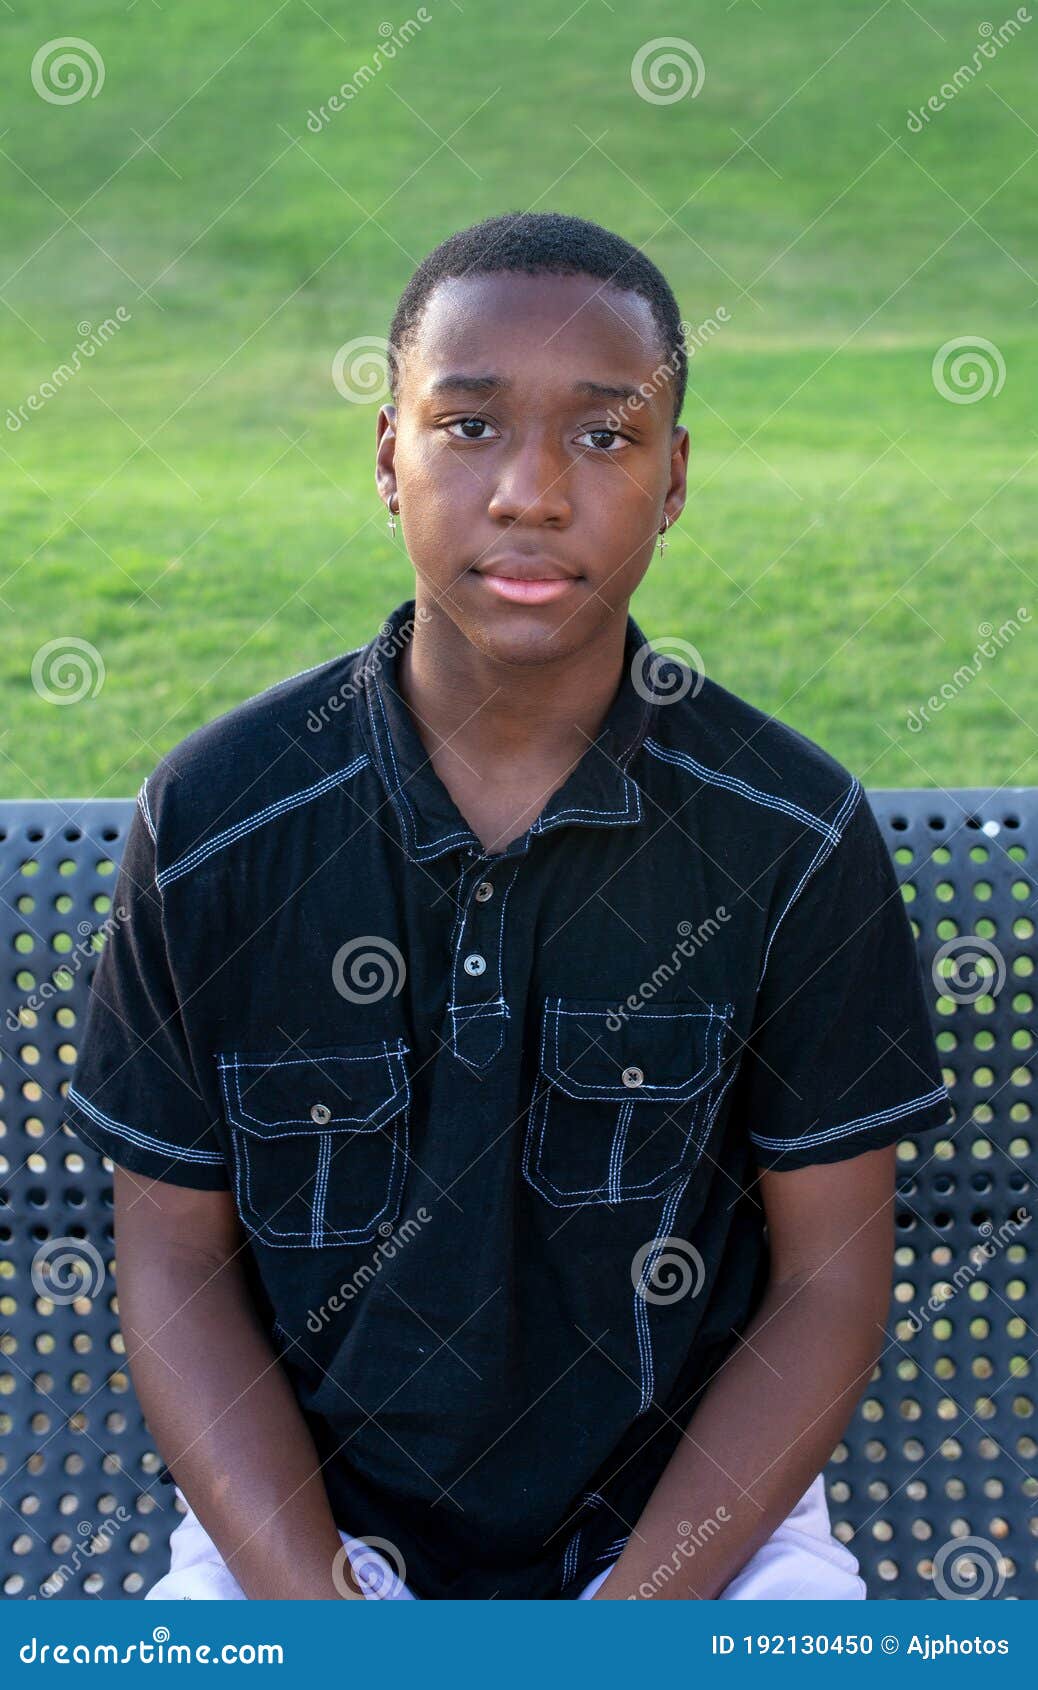 black-teen-boy-looks-serious-solemn-head-shot-portrait-african-american-outside-192130450.jpg